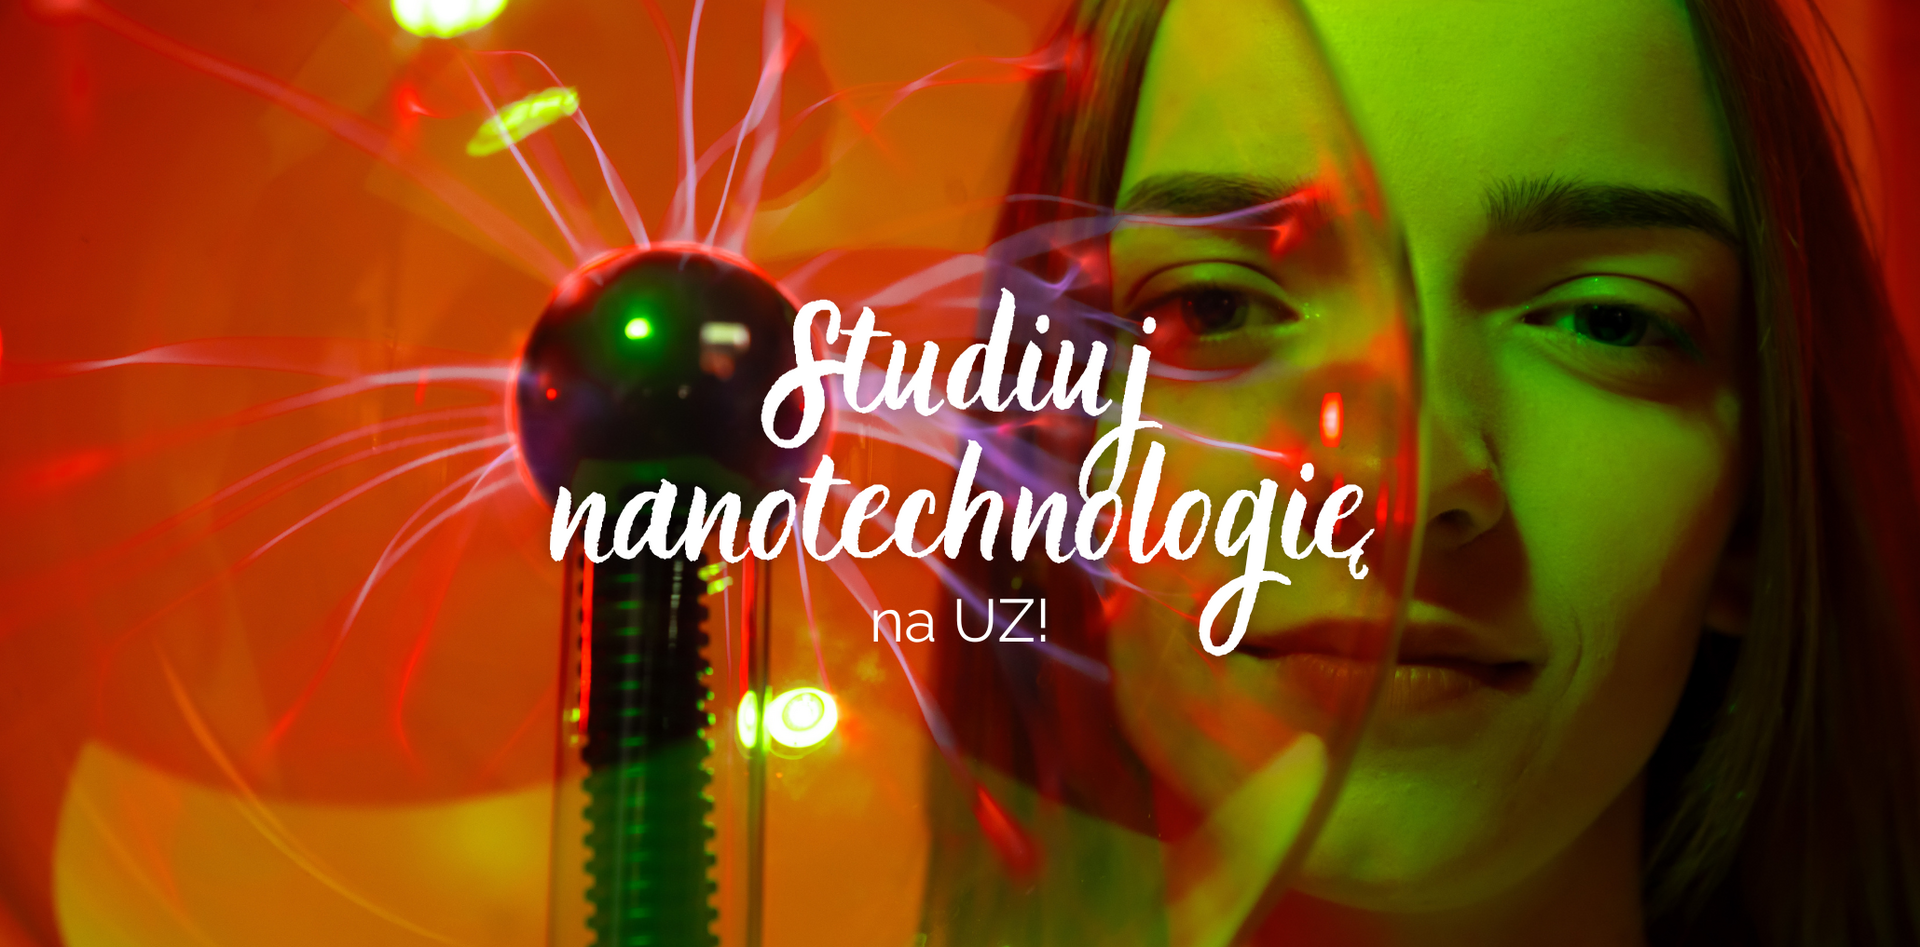 nanotechnologia_-_nowy_kierunek_na_uz_3.png